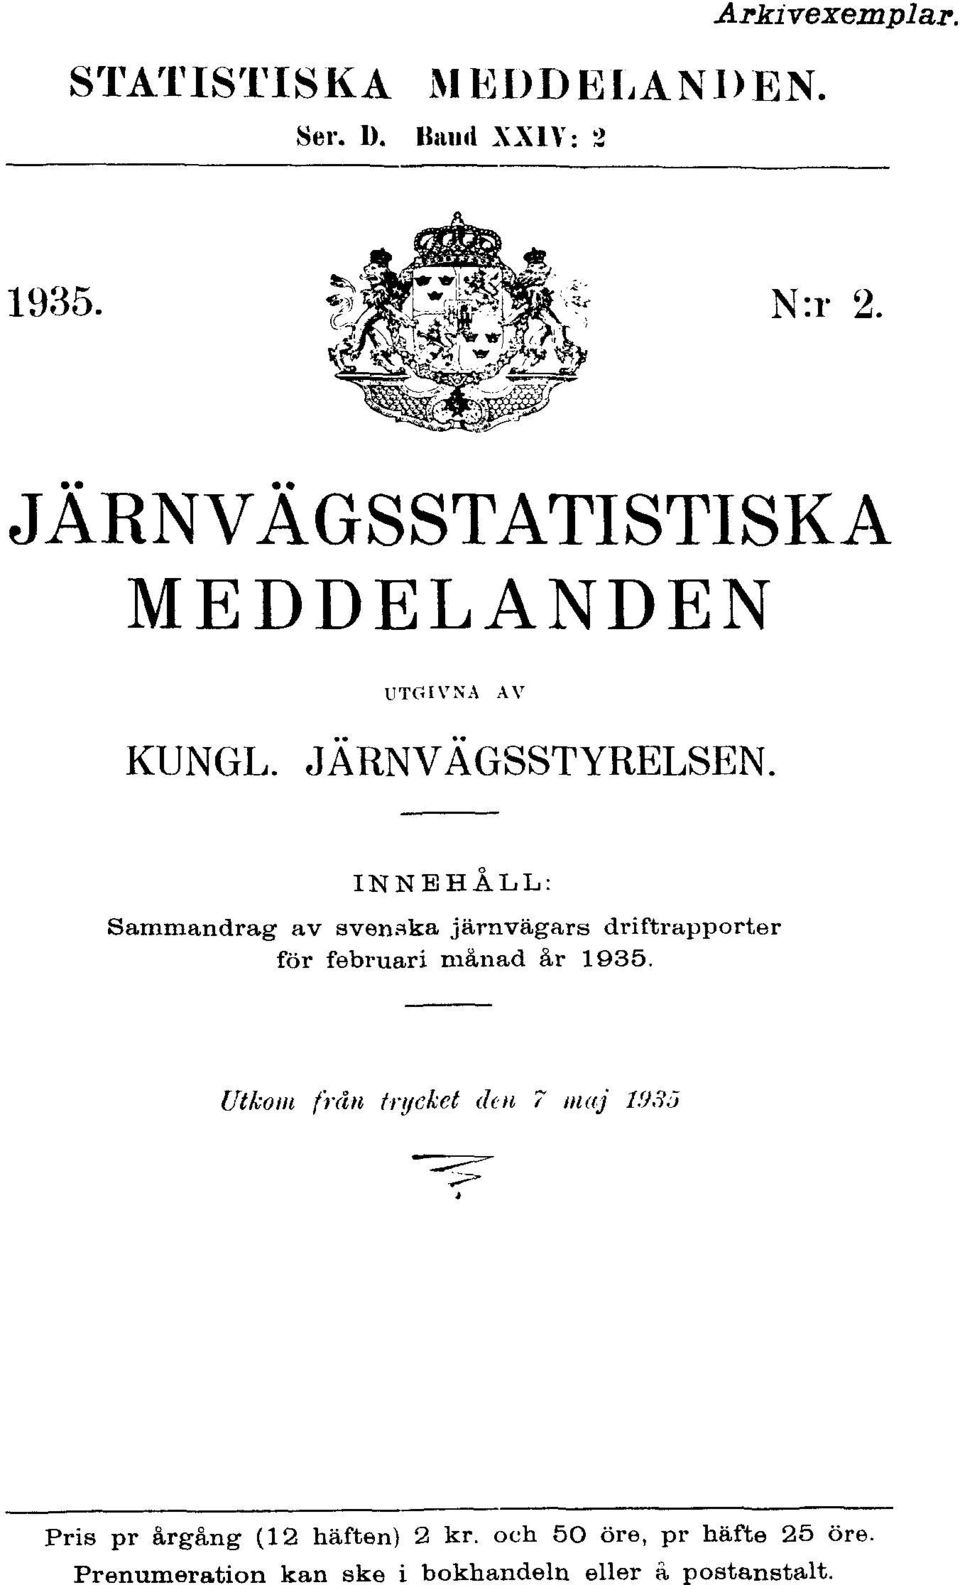 INNEHÅLL: Sammandrag av svenska järnvägars driftrapporter för februari månad år 1935.